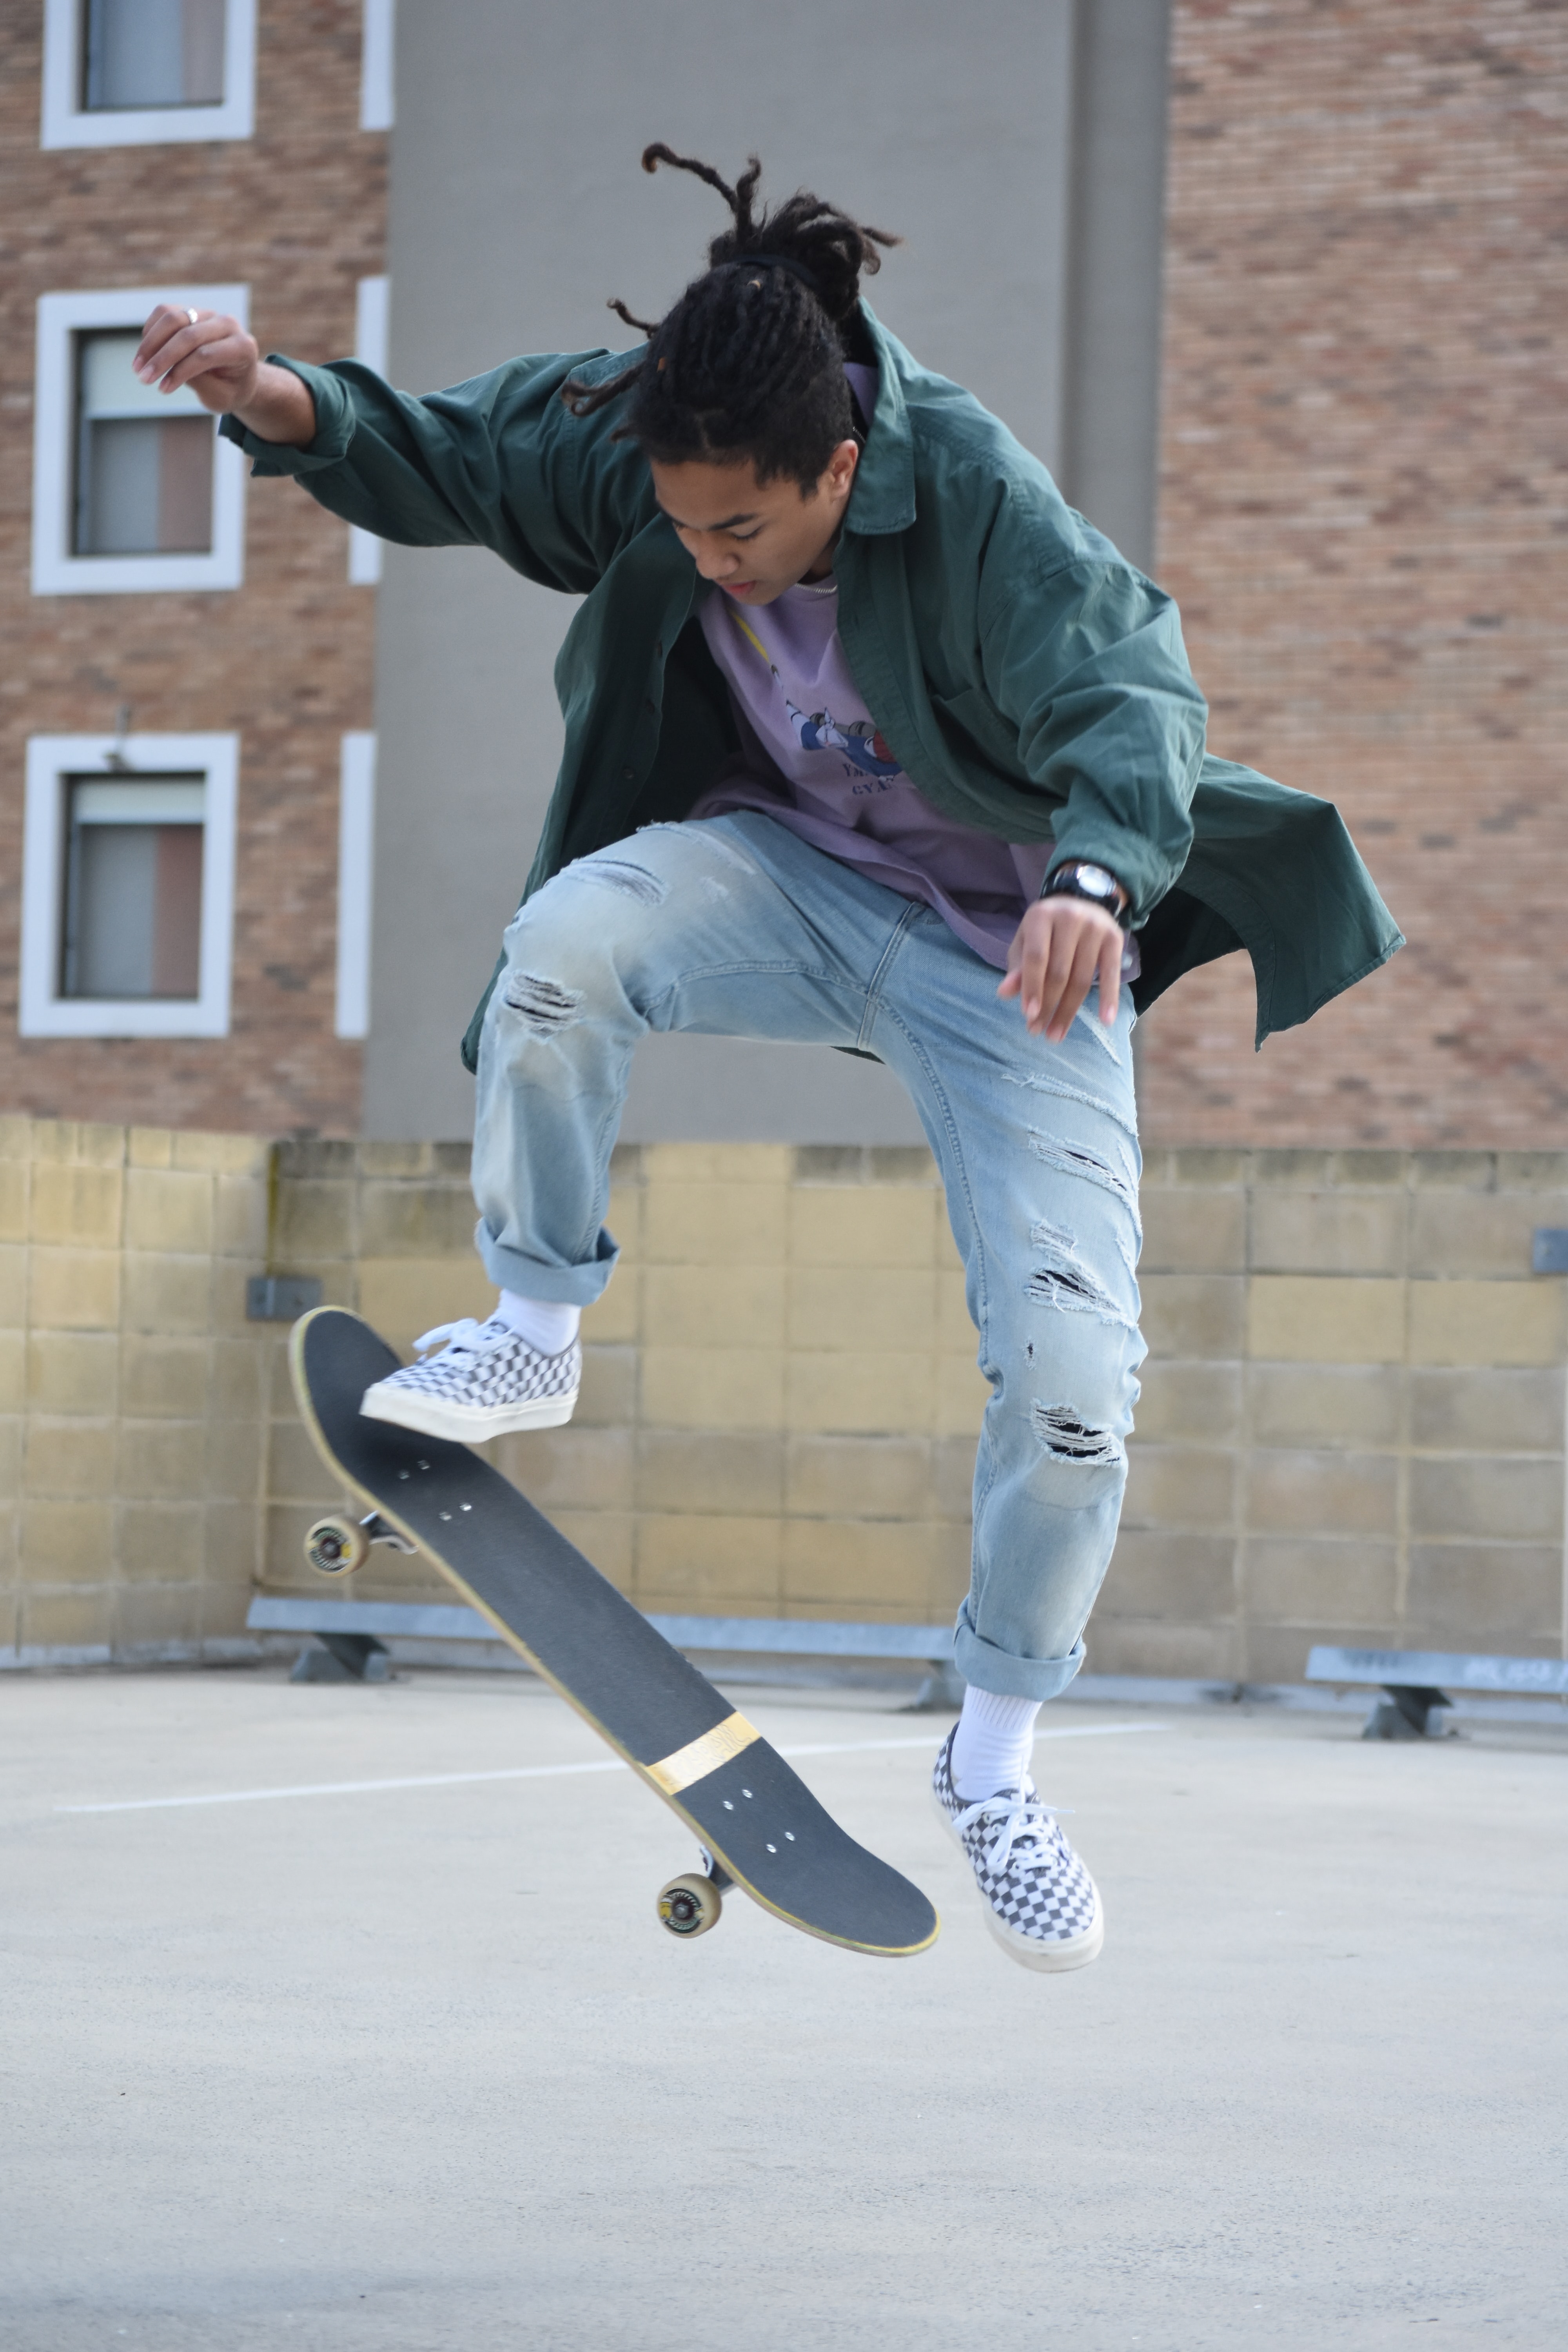 En der laver tricks på skateboard